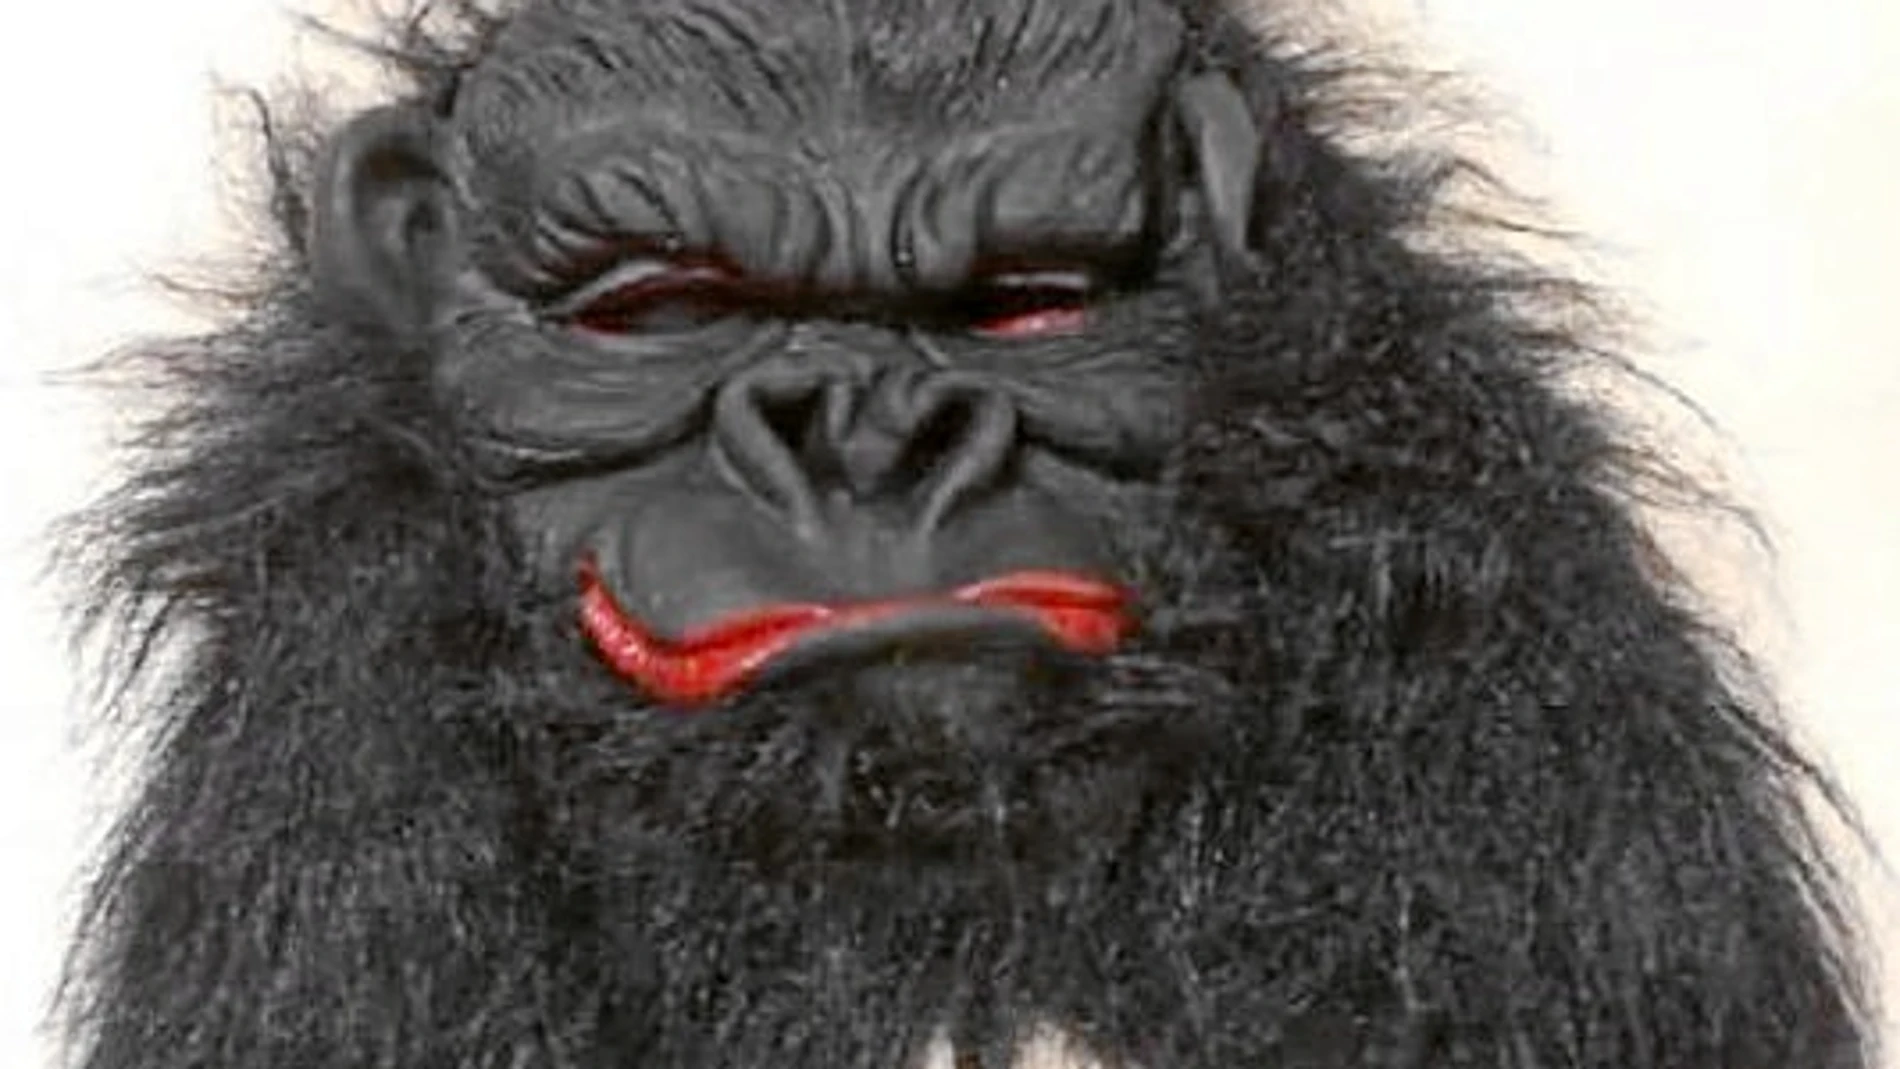 Gorila inflamable, por el tejido utilizado